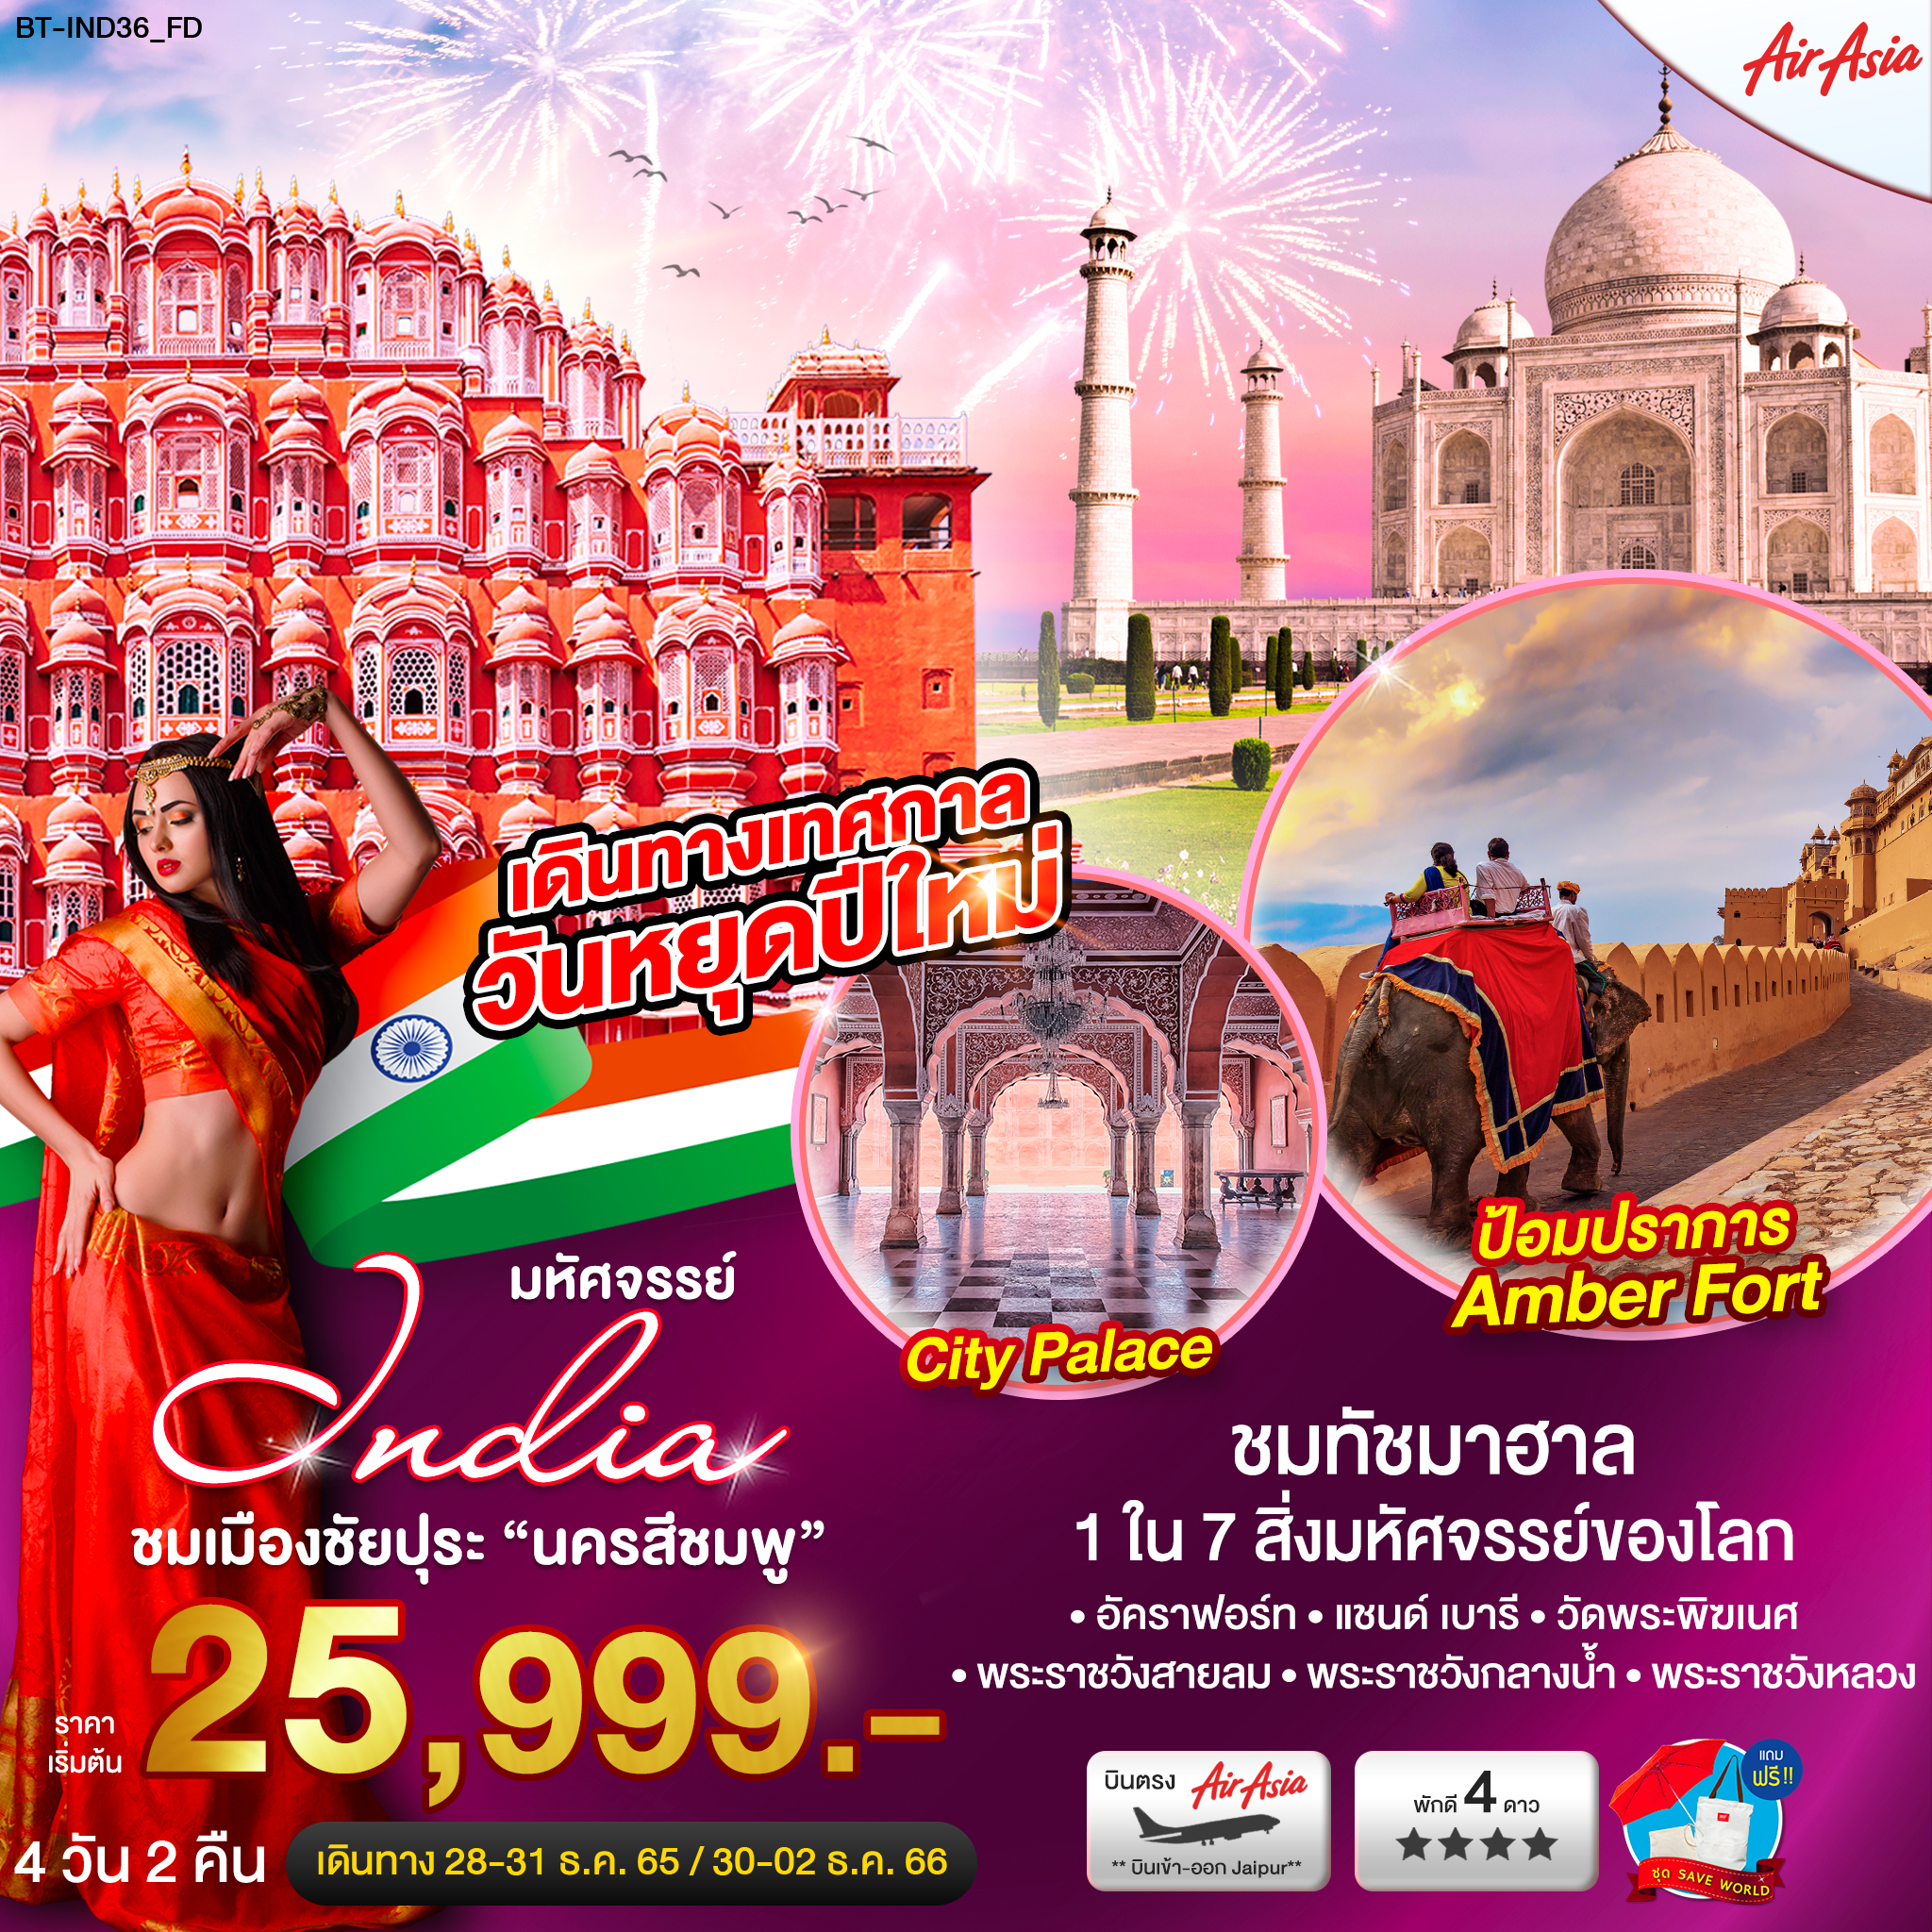 ทัวร์อินเดีย ชมเมืองชัยปุระ นครสีชมพู เทศกาลปีใหม่ 4 วัน 2 คืน